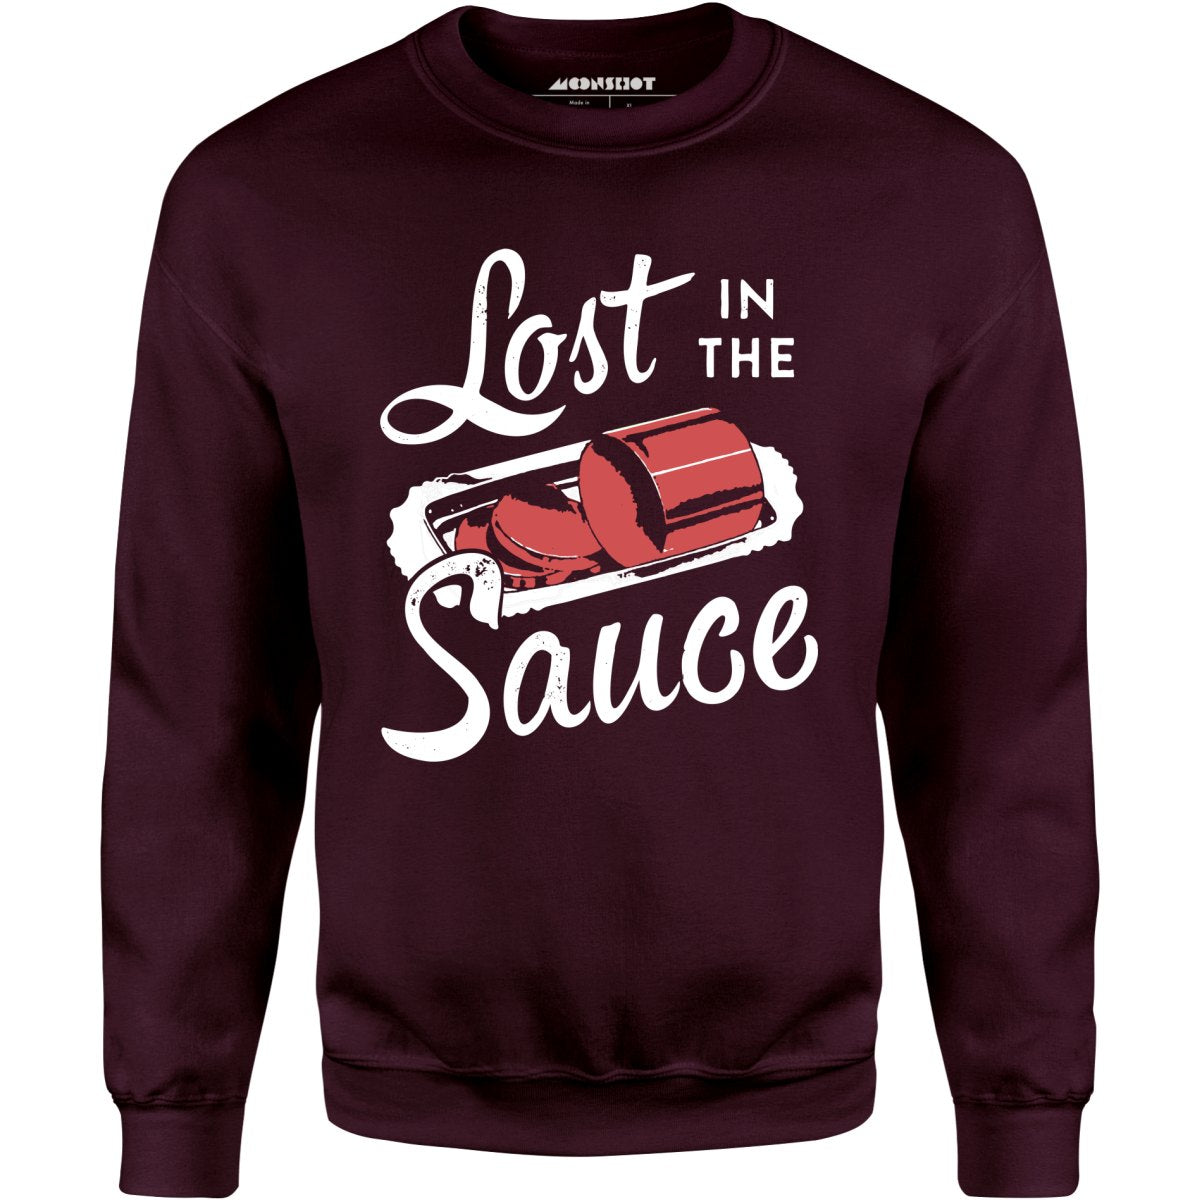 Lost in the Sauce - Unisex Sweatshirt